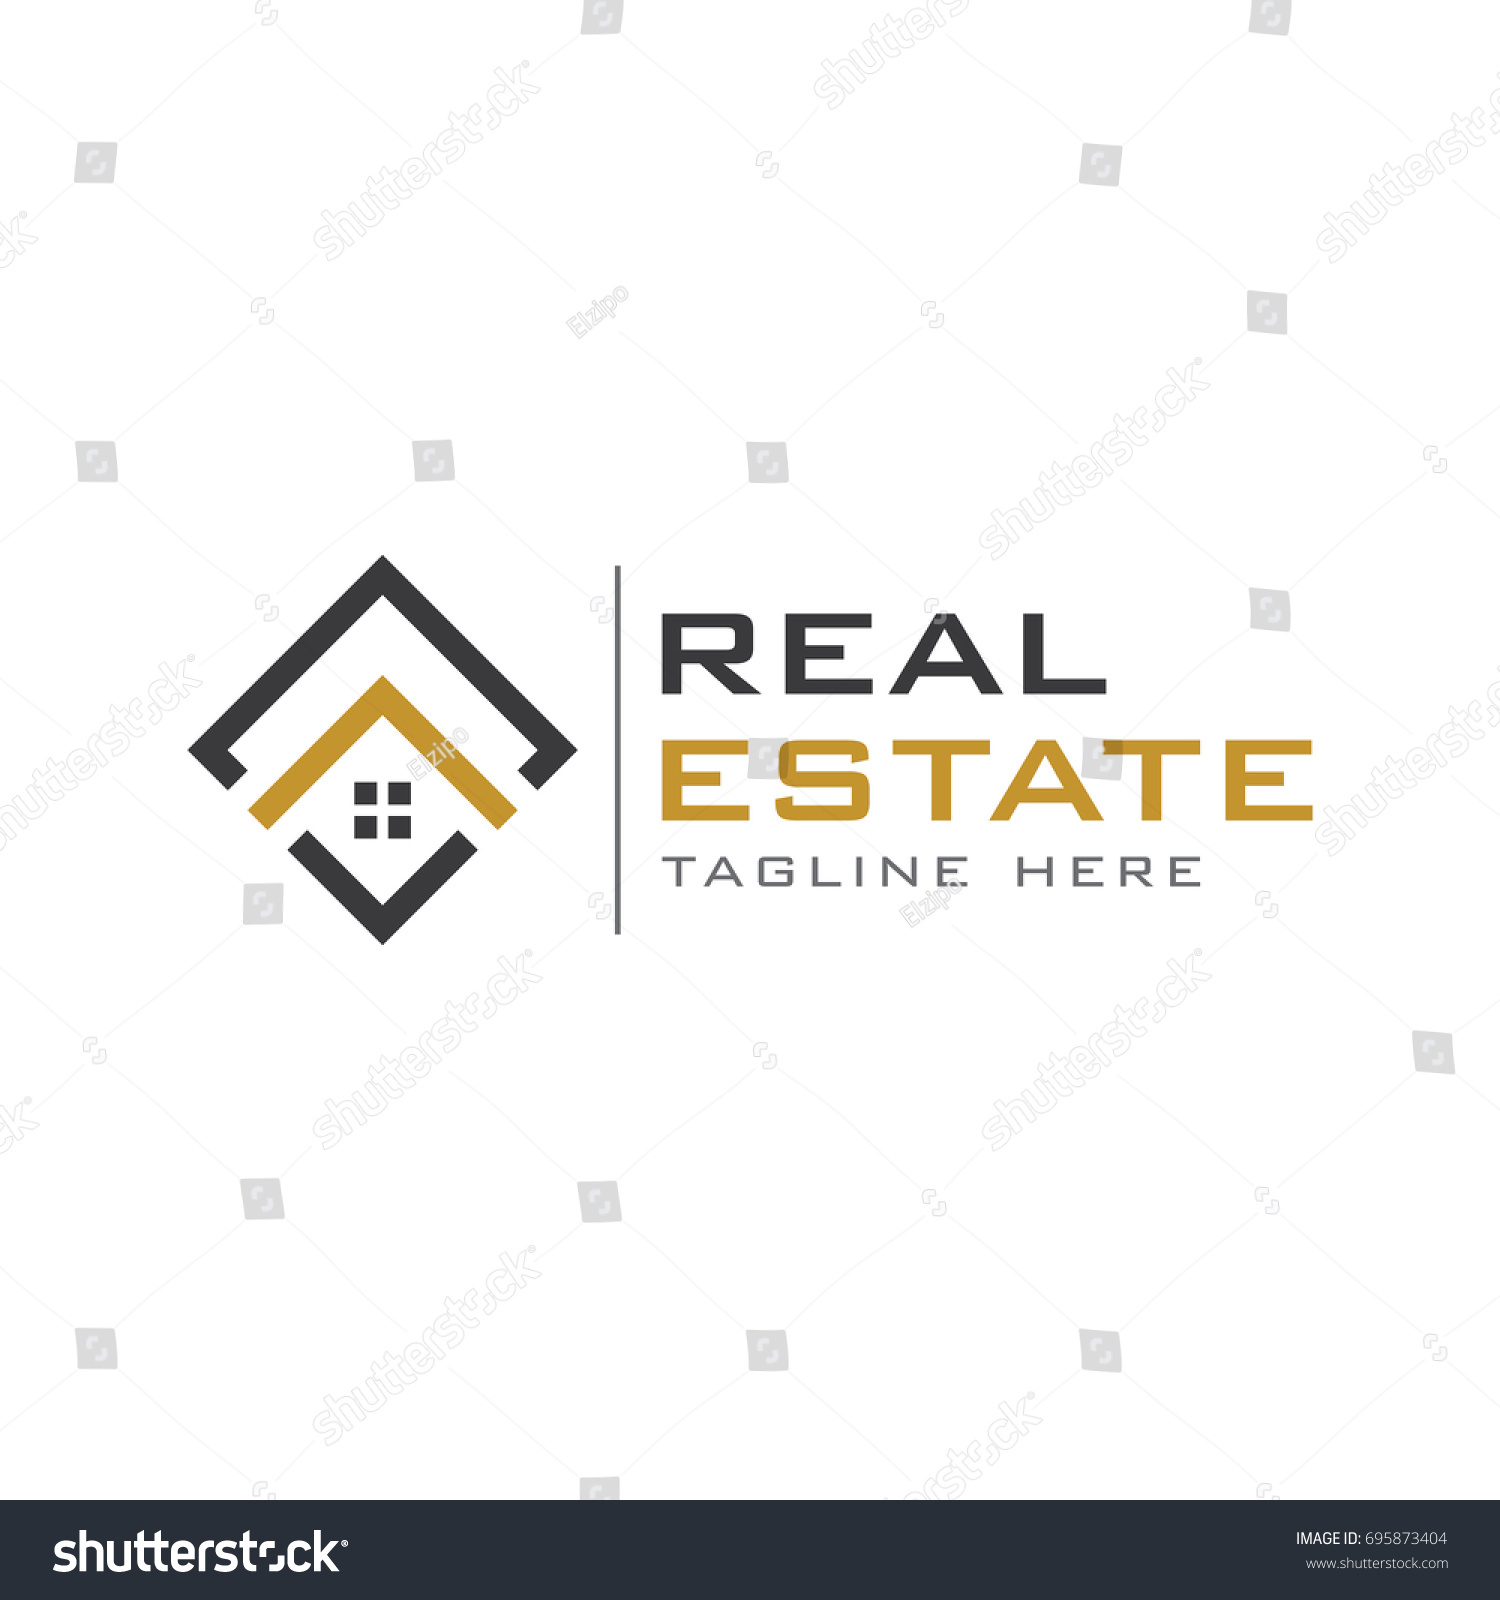 Real estate logo #695873404